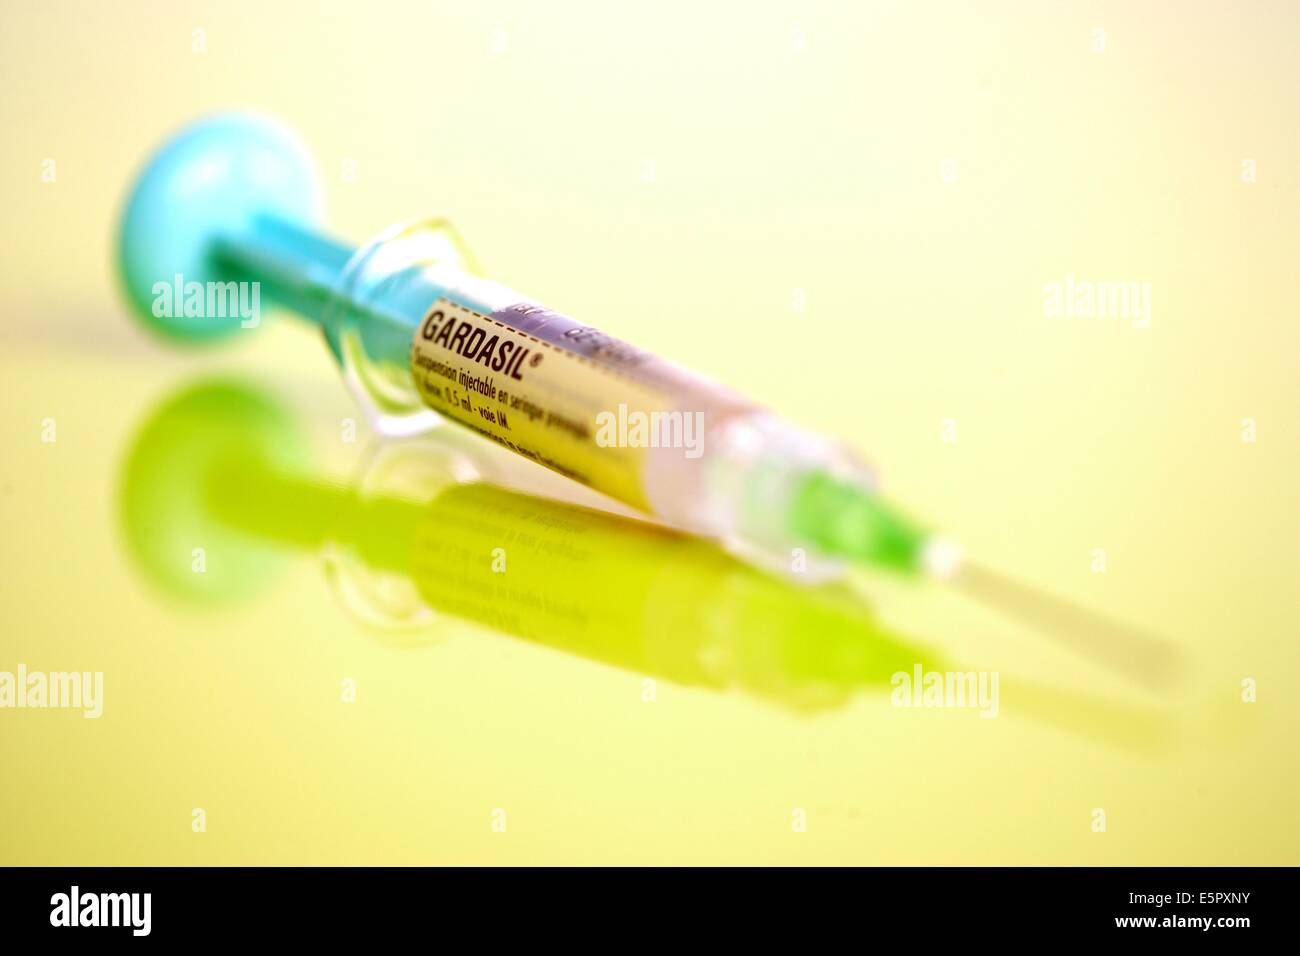 Le Gardasil, un vaccin contre certains types de papillomavirus humains (HPV) responsables du cancer du col de l'utérus et les verrues génitales. Banque D'Images